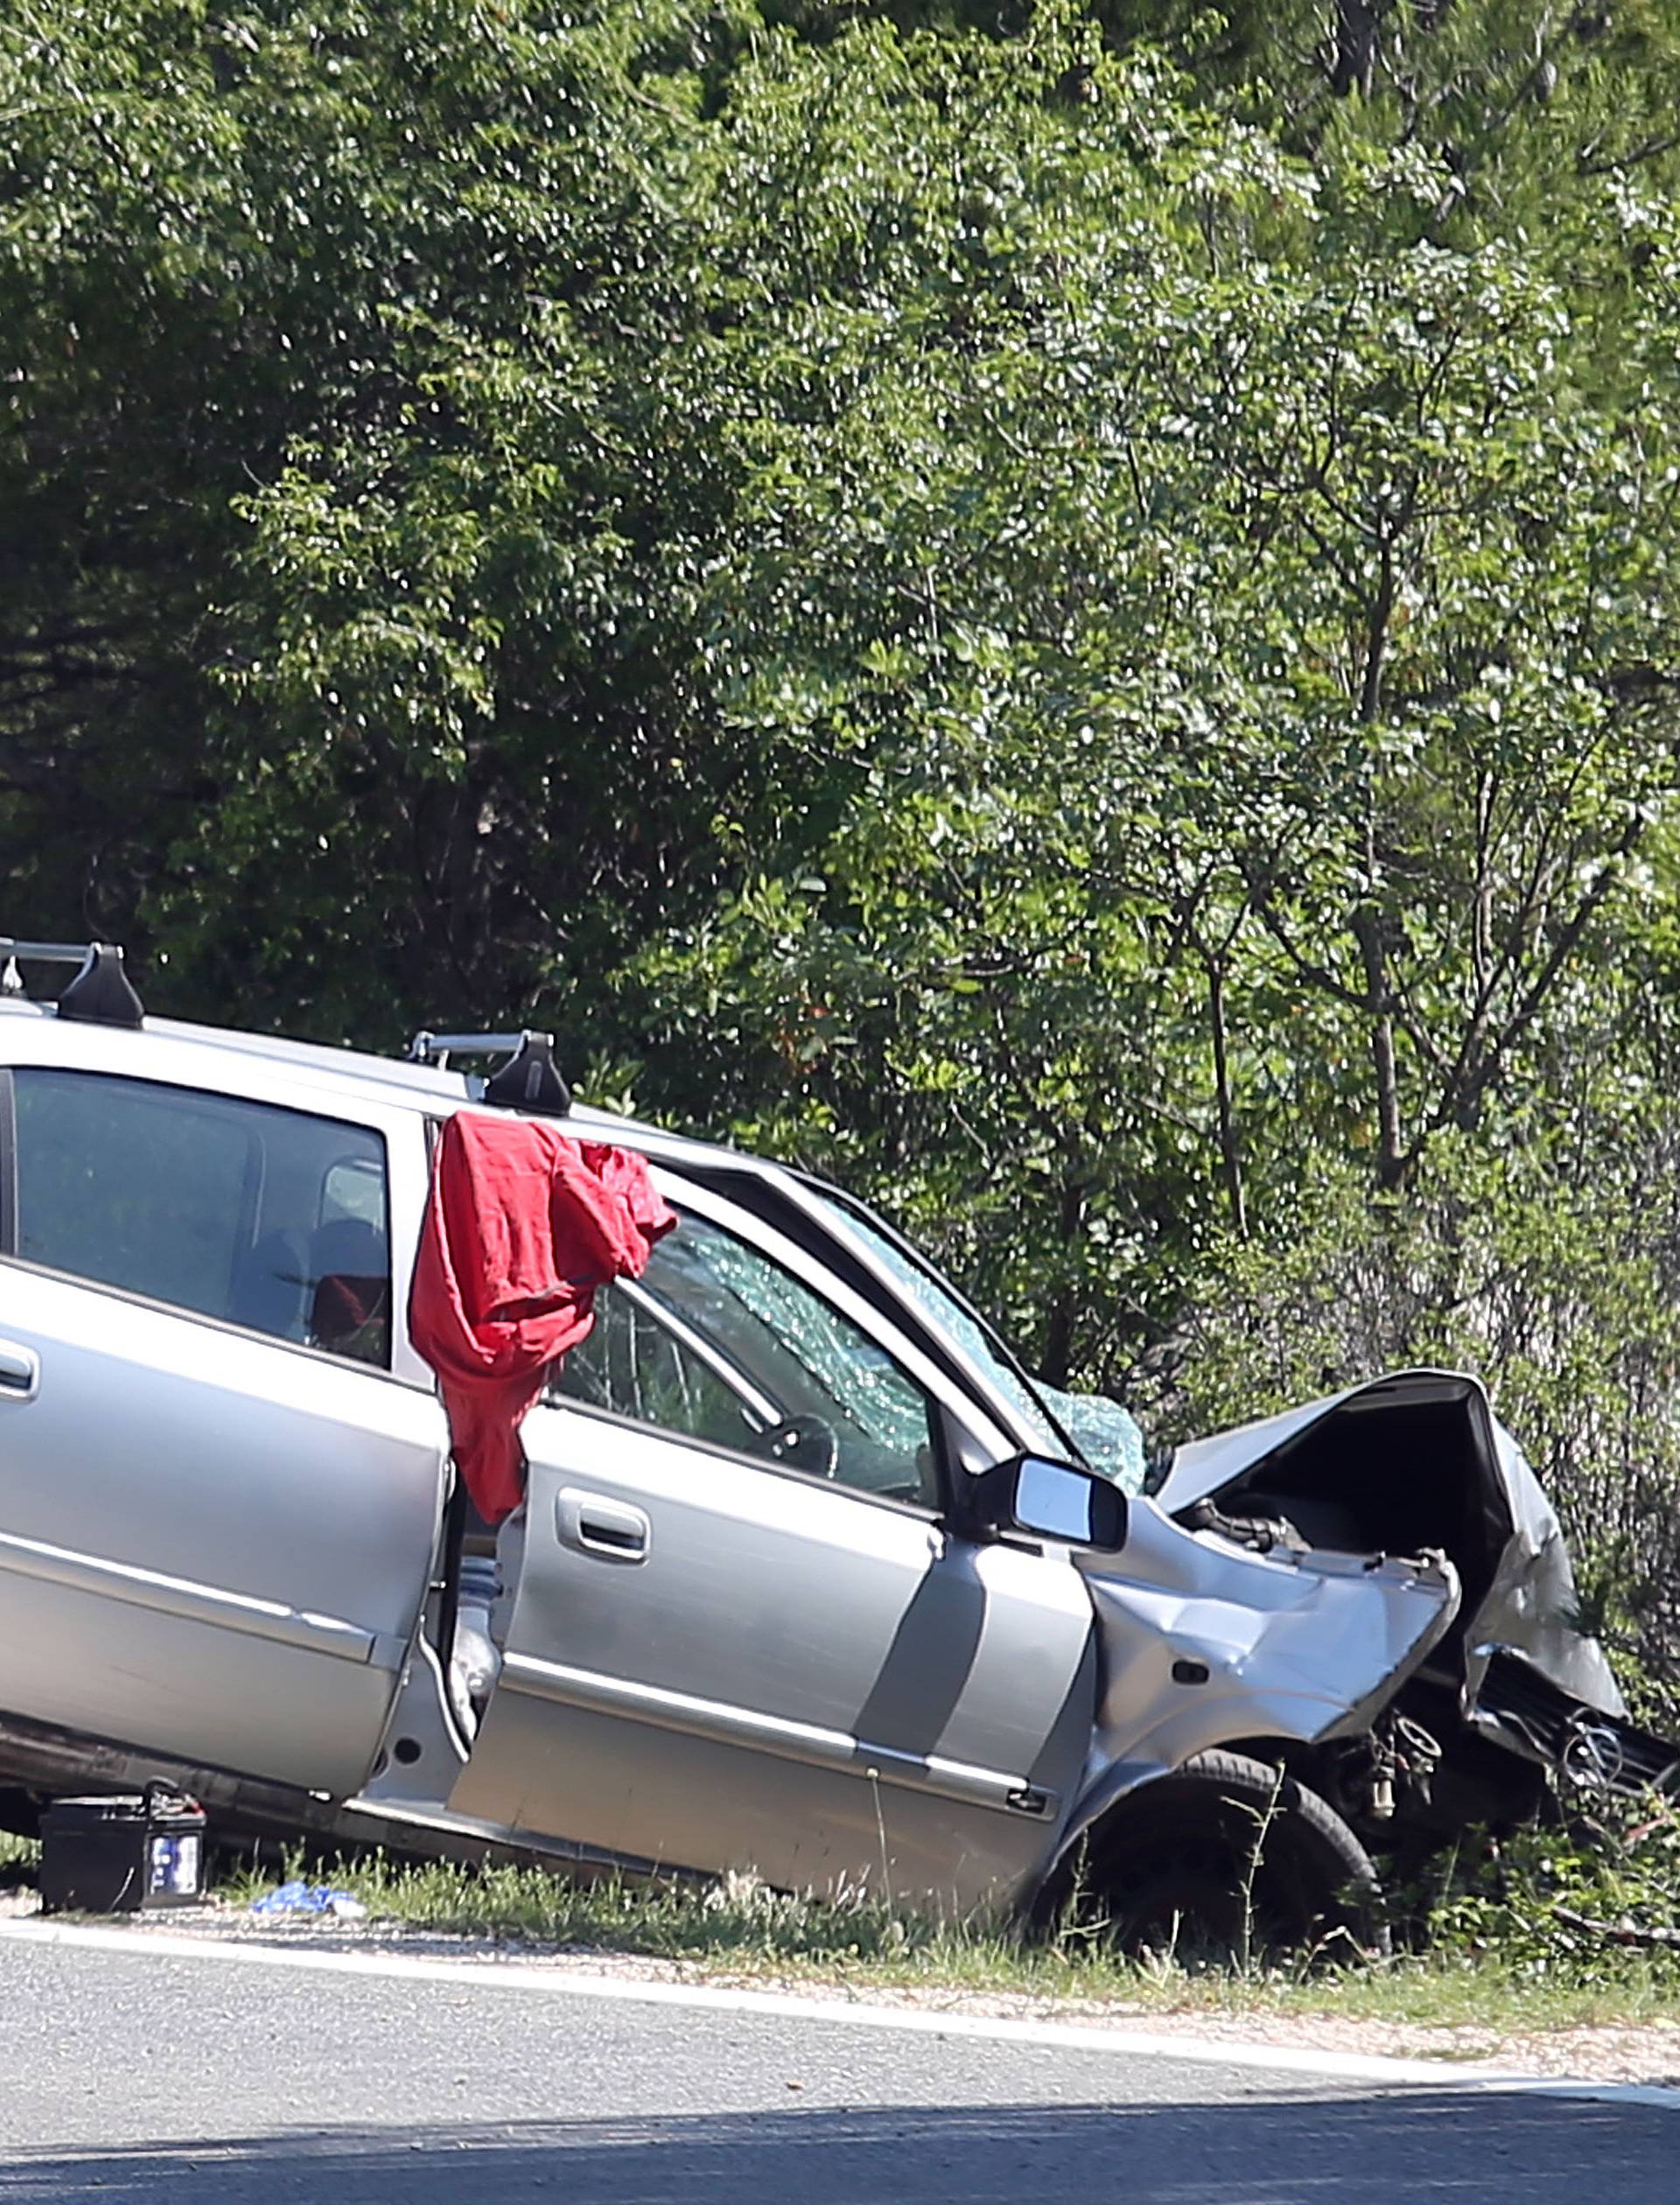 Vozač sletio s ceste i poginuo: Nesreća kod kampa na Murteru